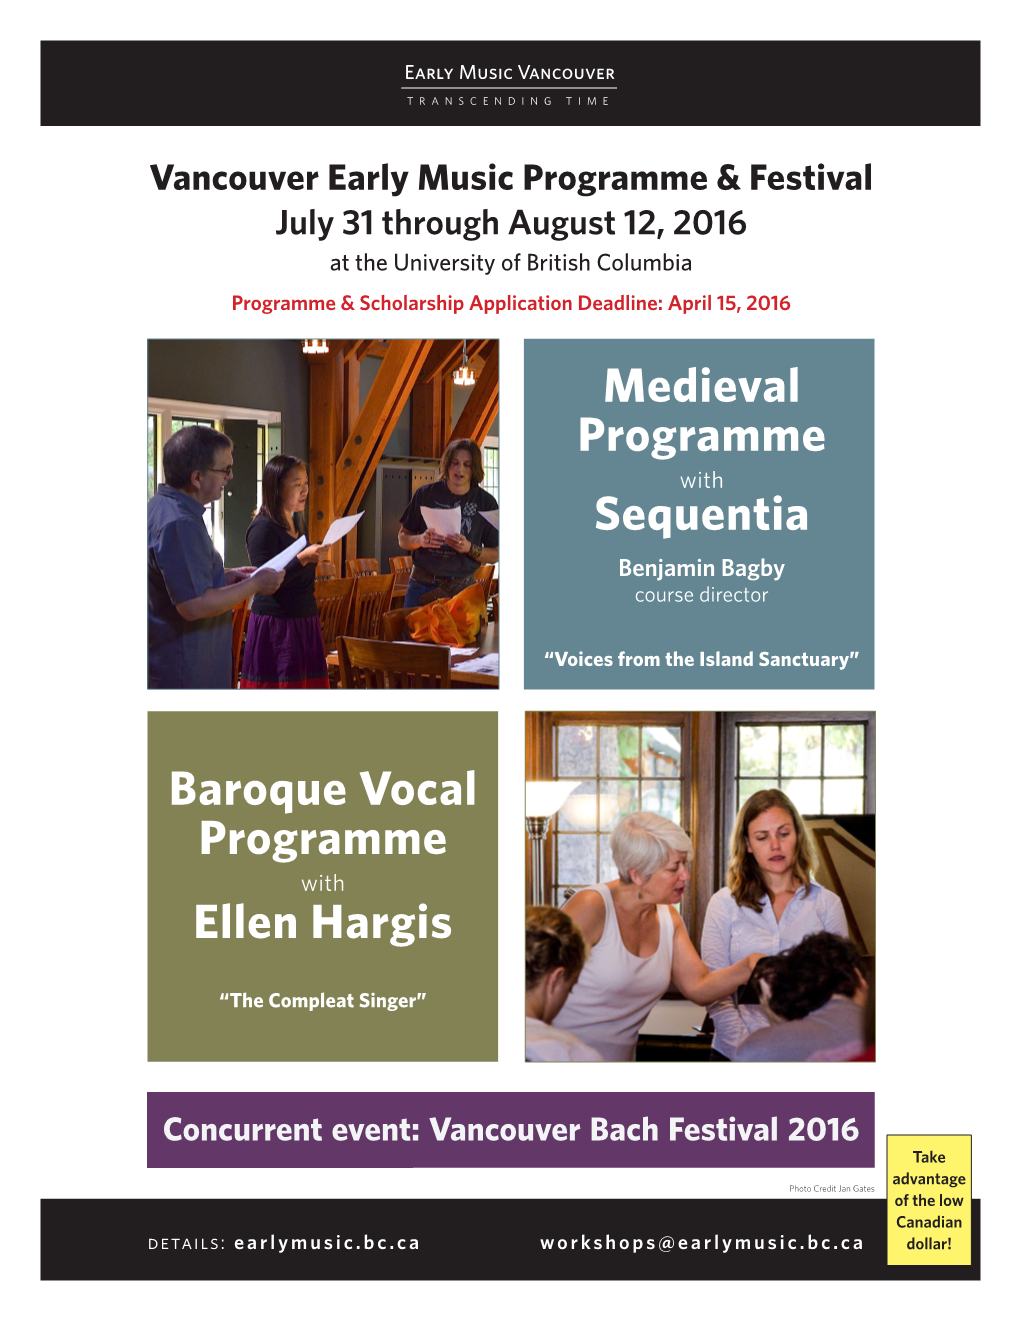 Baroque Vocal Programme with Ellen Hargis